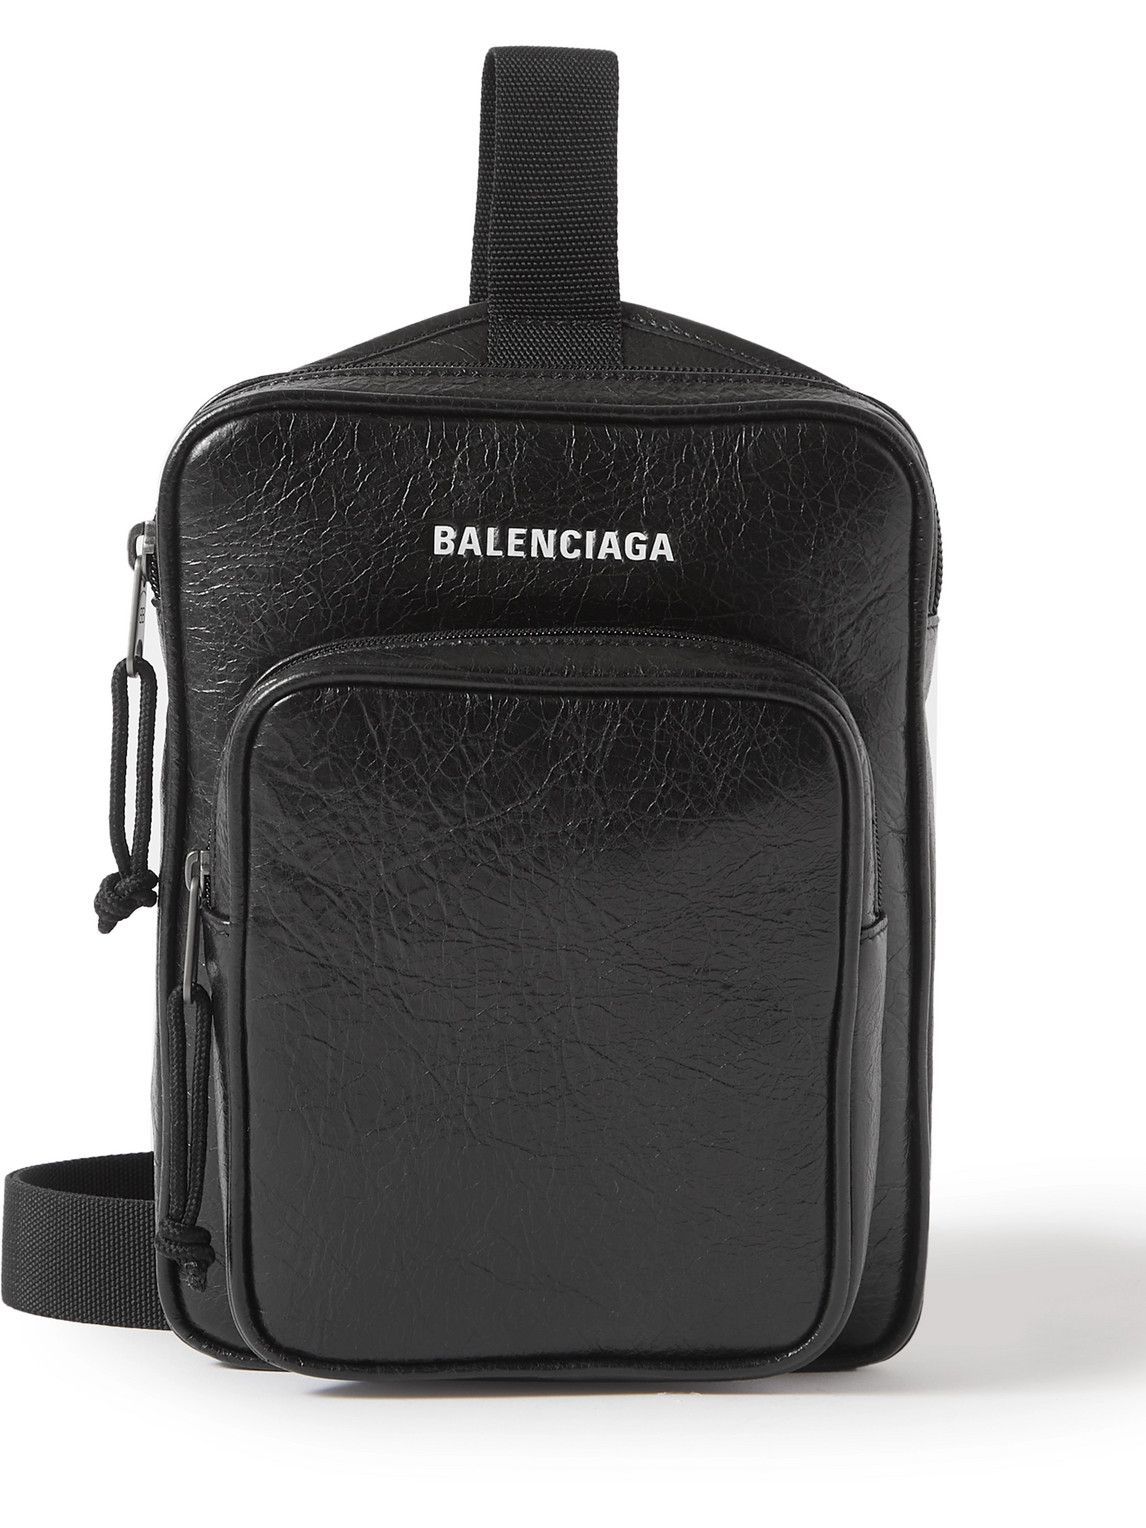 Balenciaga - Explorer Logo-Print Crinkled-Leather Messenger Bag Balenciaga